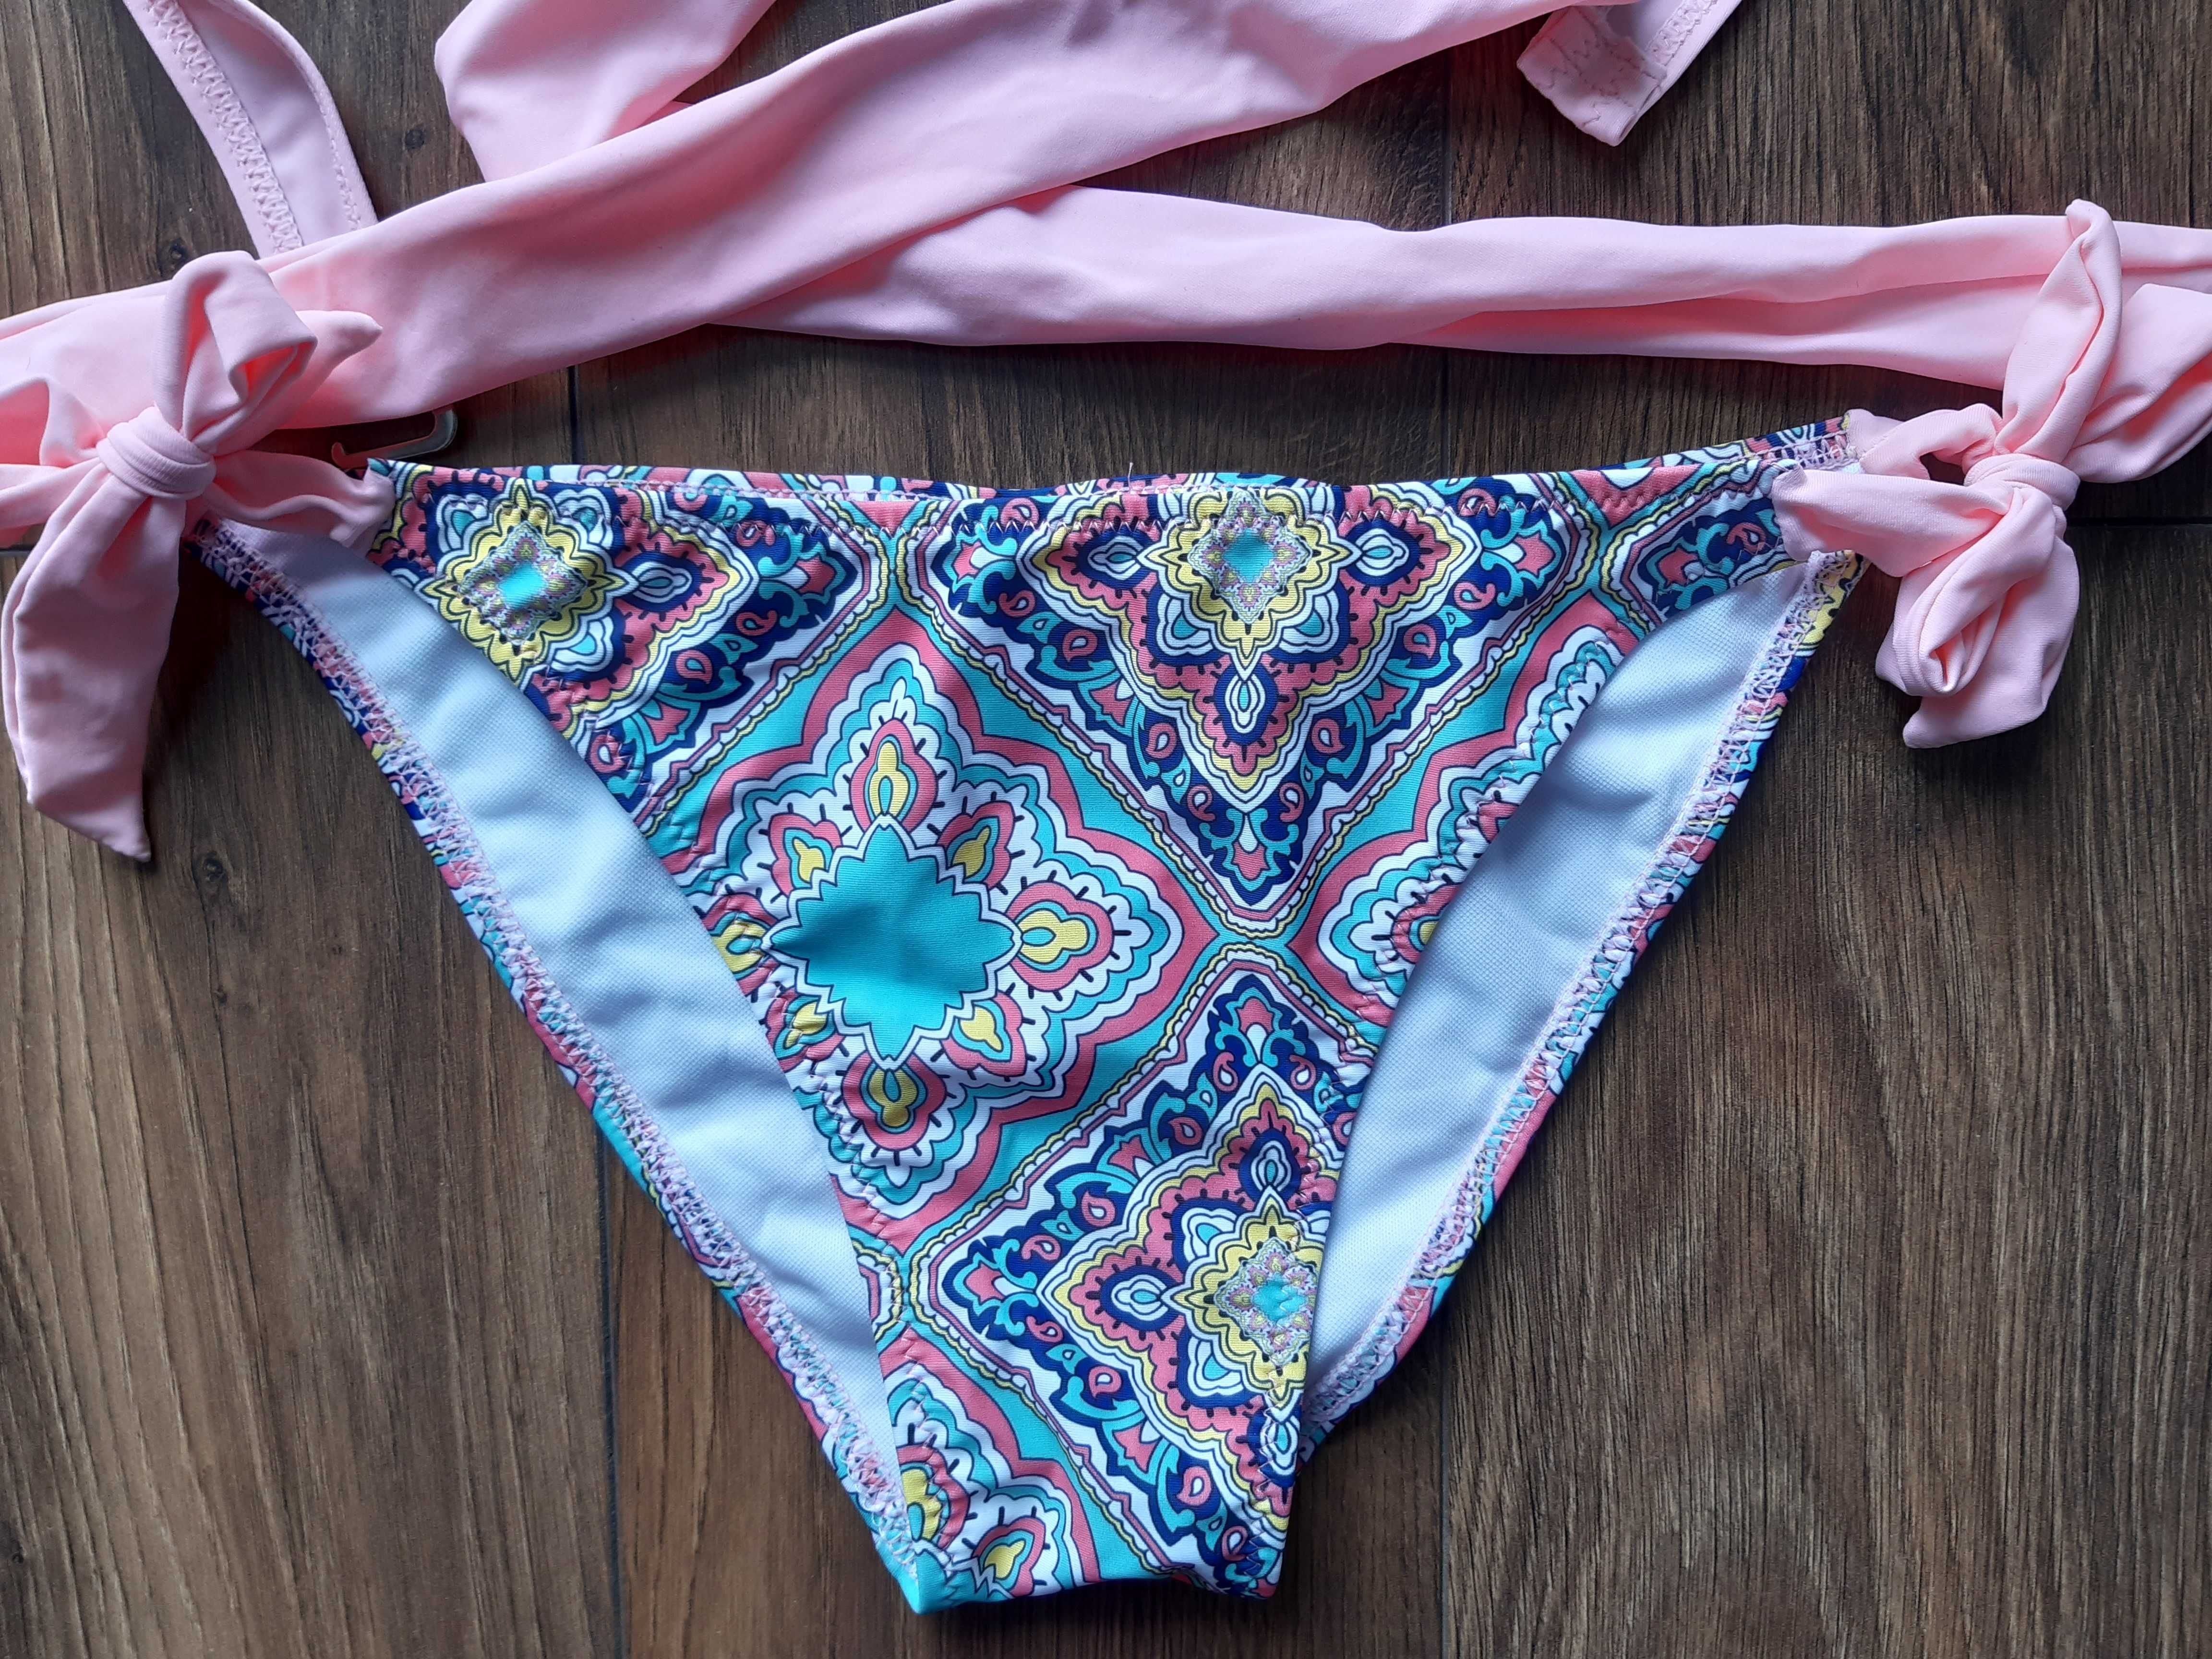 Nowe bikini strój kąpielowy pastelowe kolory PUSHUP rozmiar M WROCŁAW